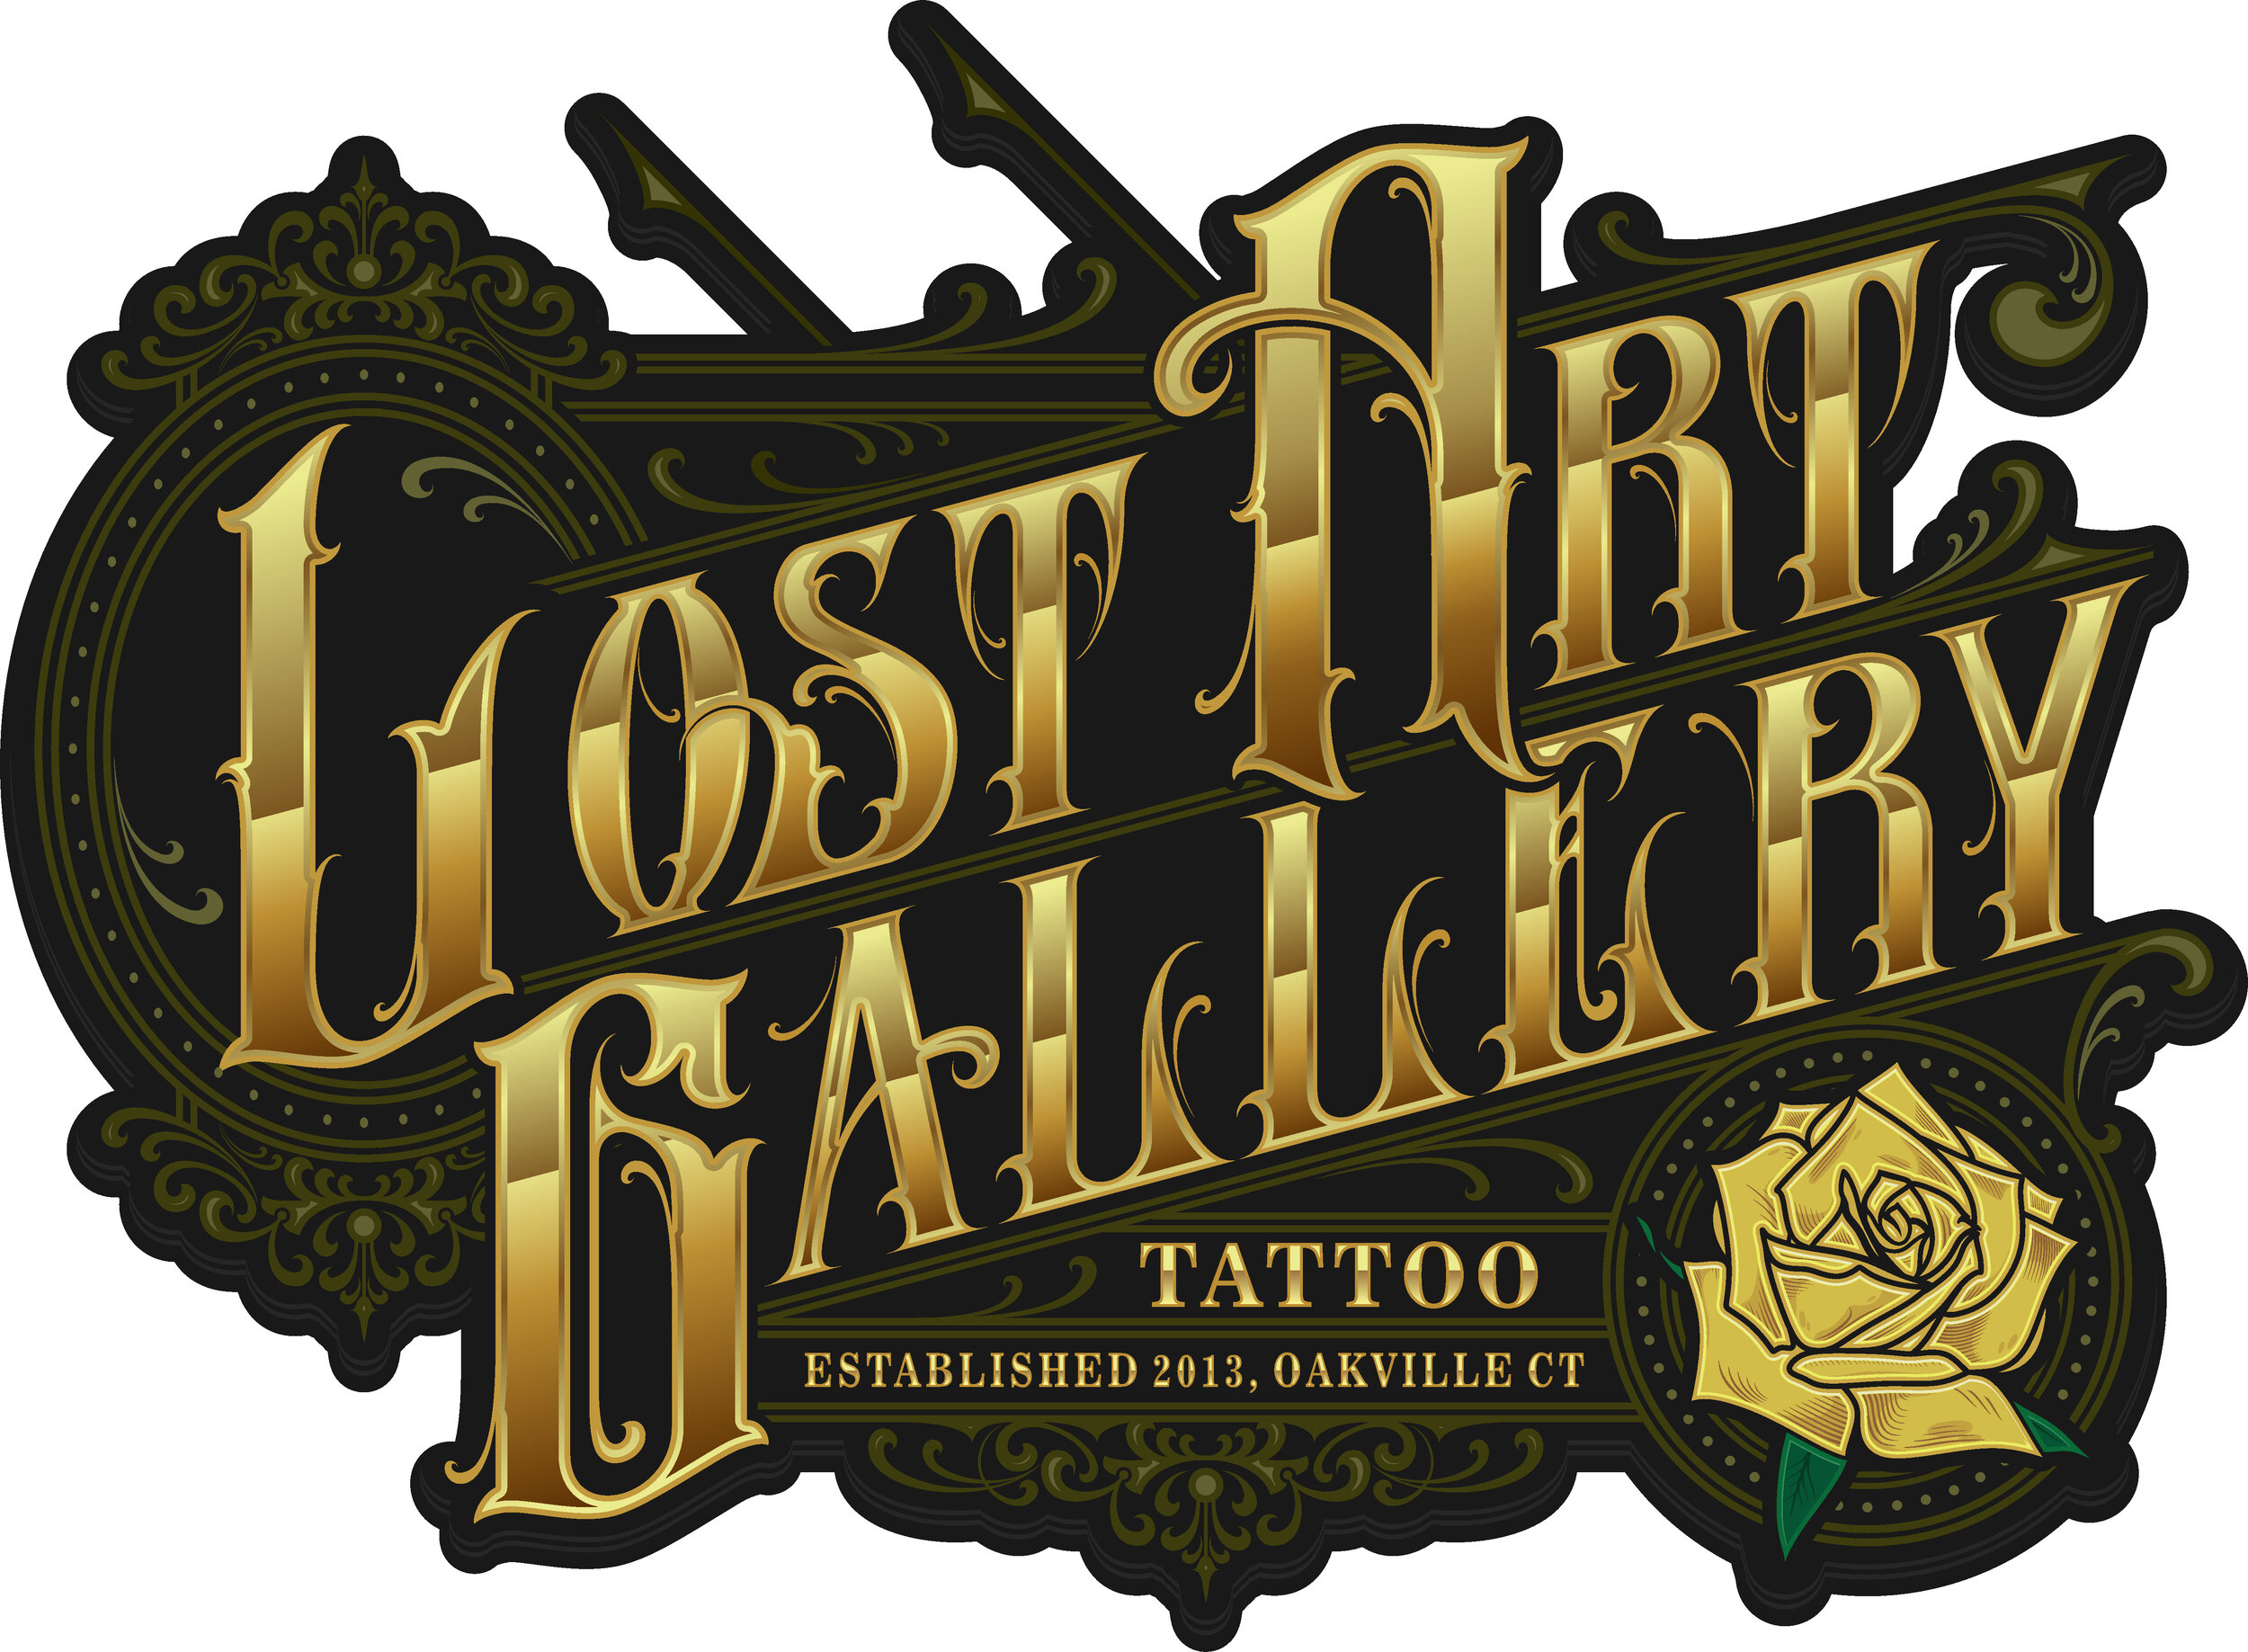 Lost Art Gallery & Tattoo